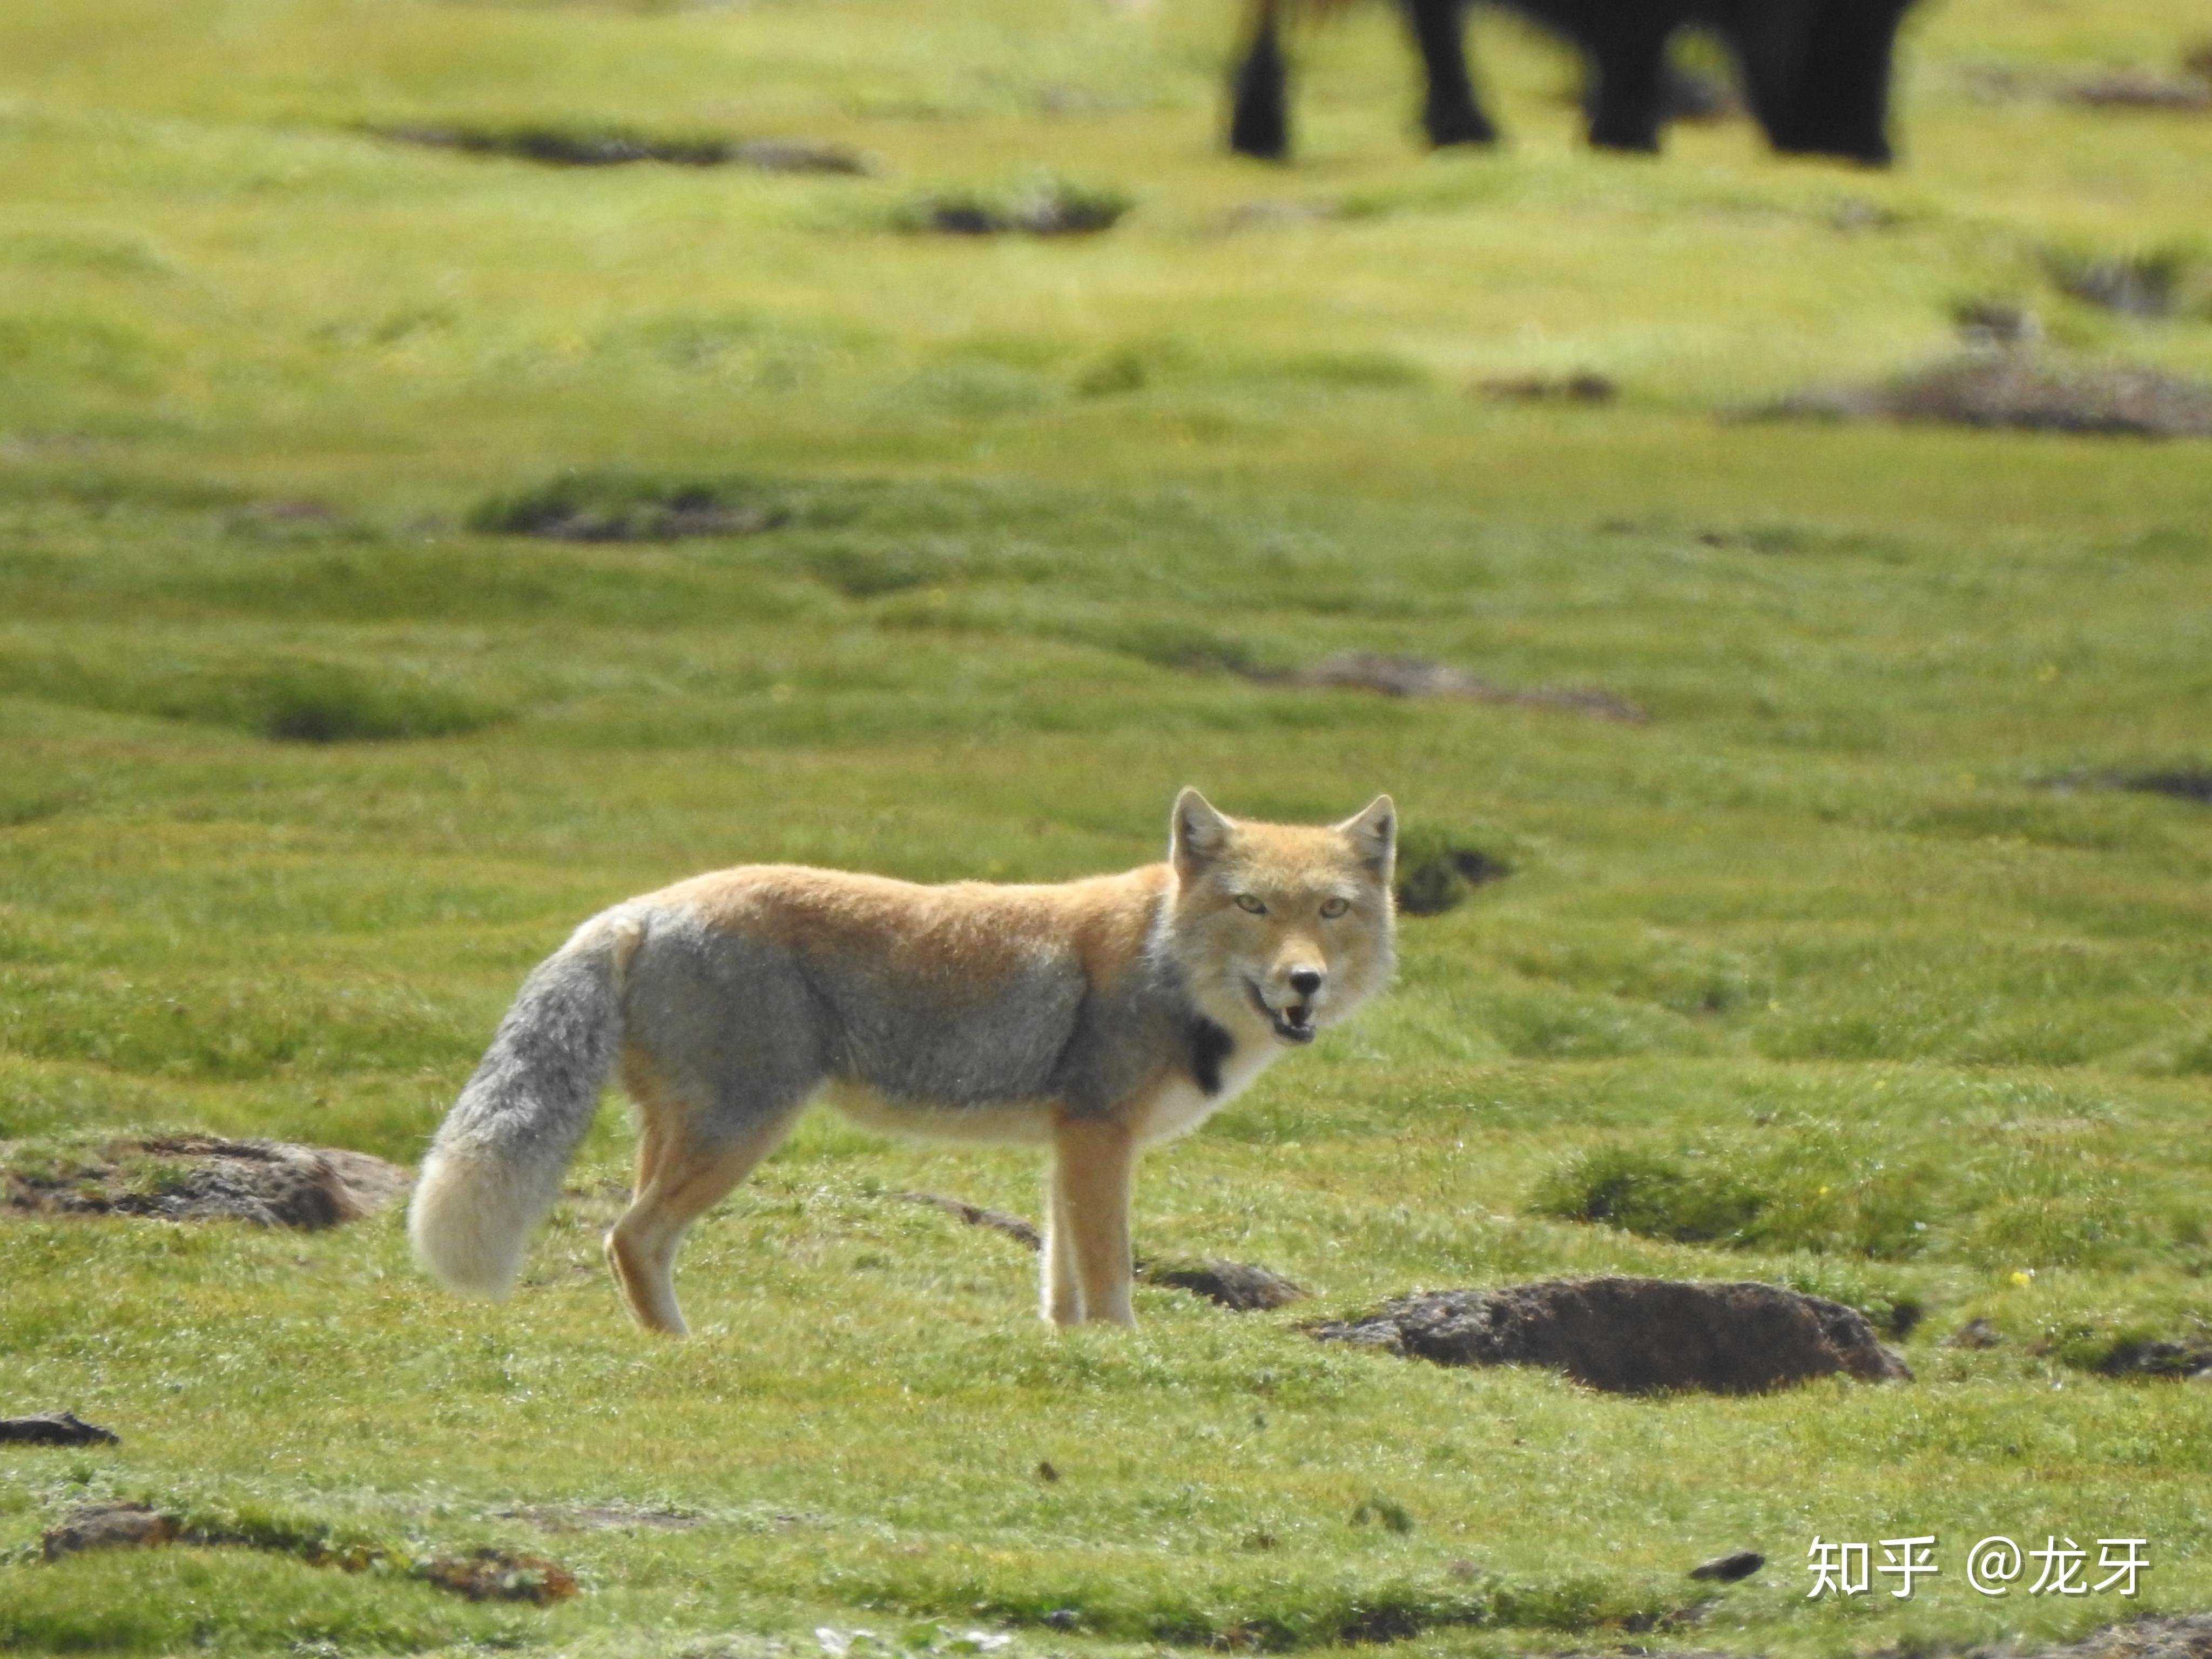 国家重点保护野生动物赤狐图片壁纸 - 壁纸 - 亿图全景图库